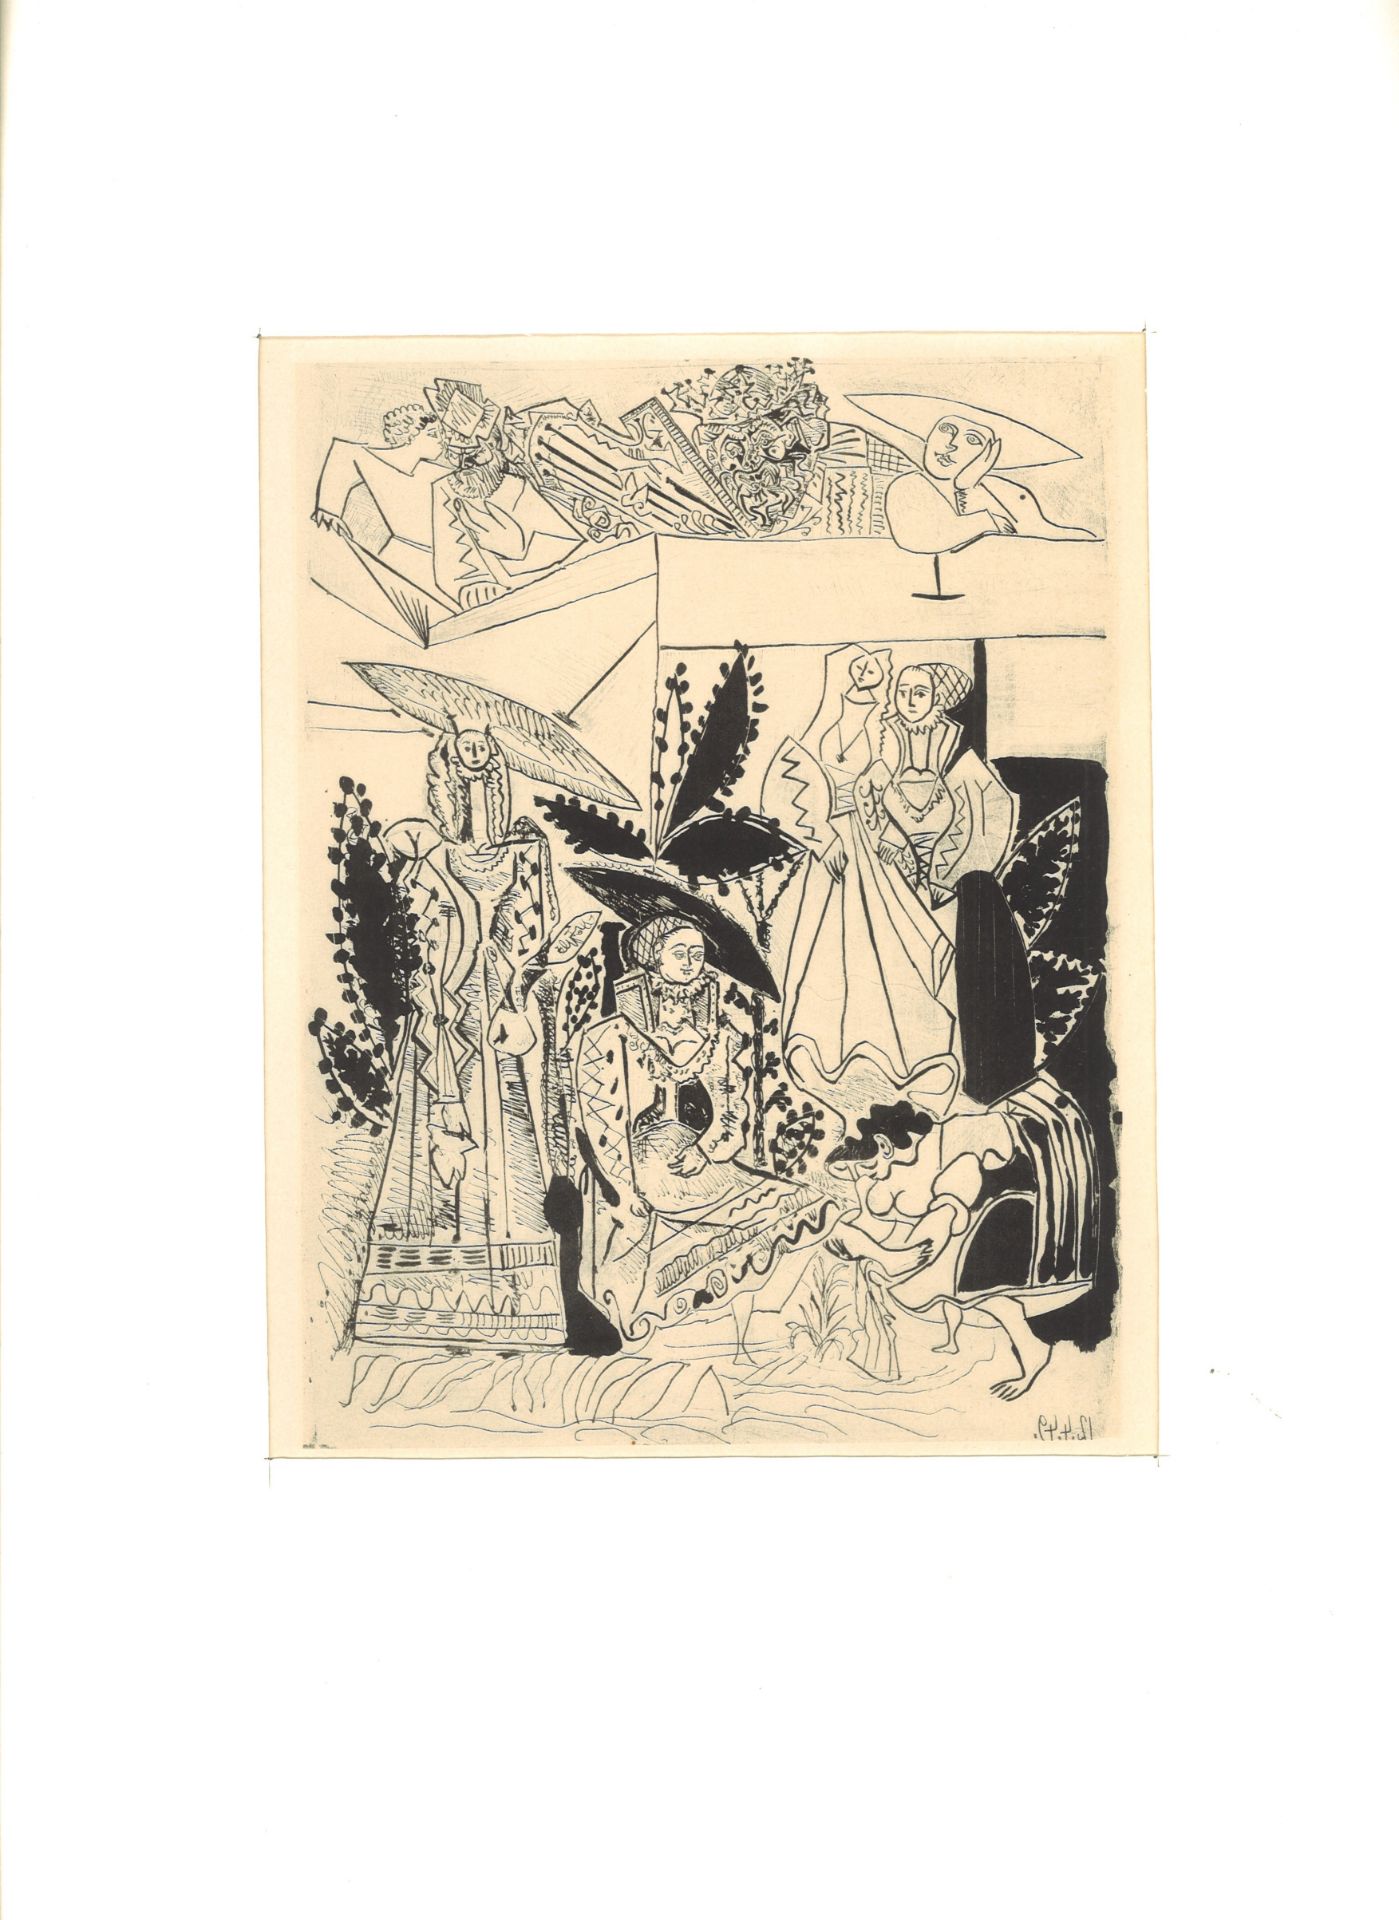 Pablo Picasso (1881-1973) "David et Bethsabée", Lithographie, Verlag Mourlot, Sauret Paris 1950.